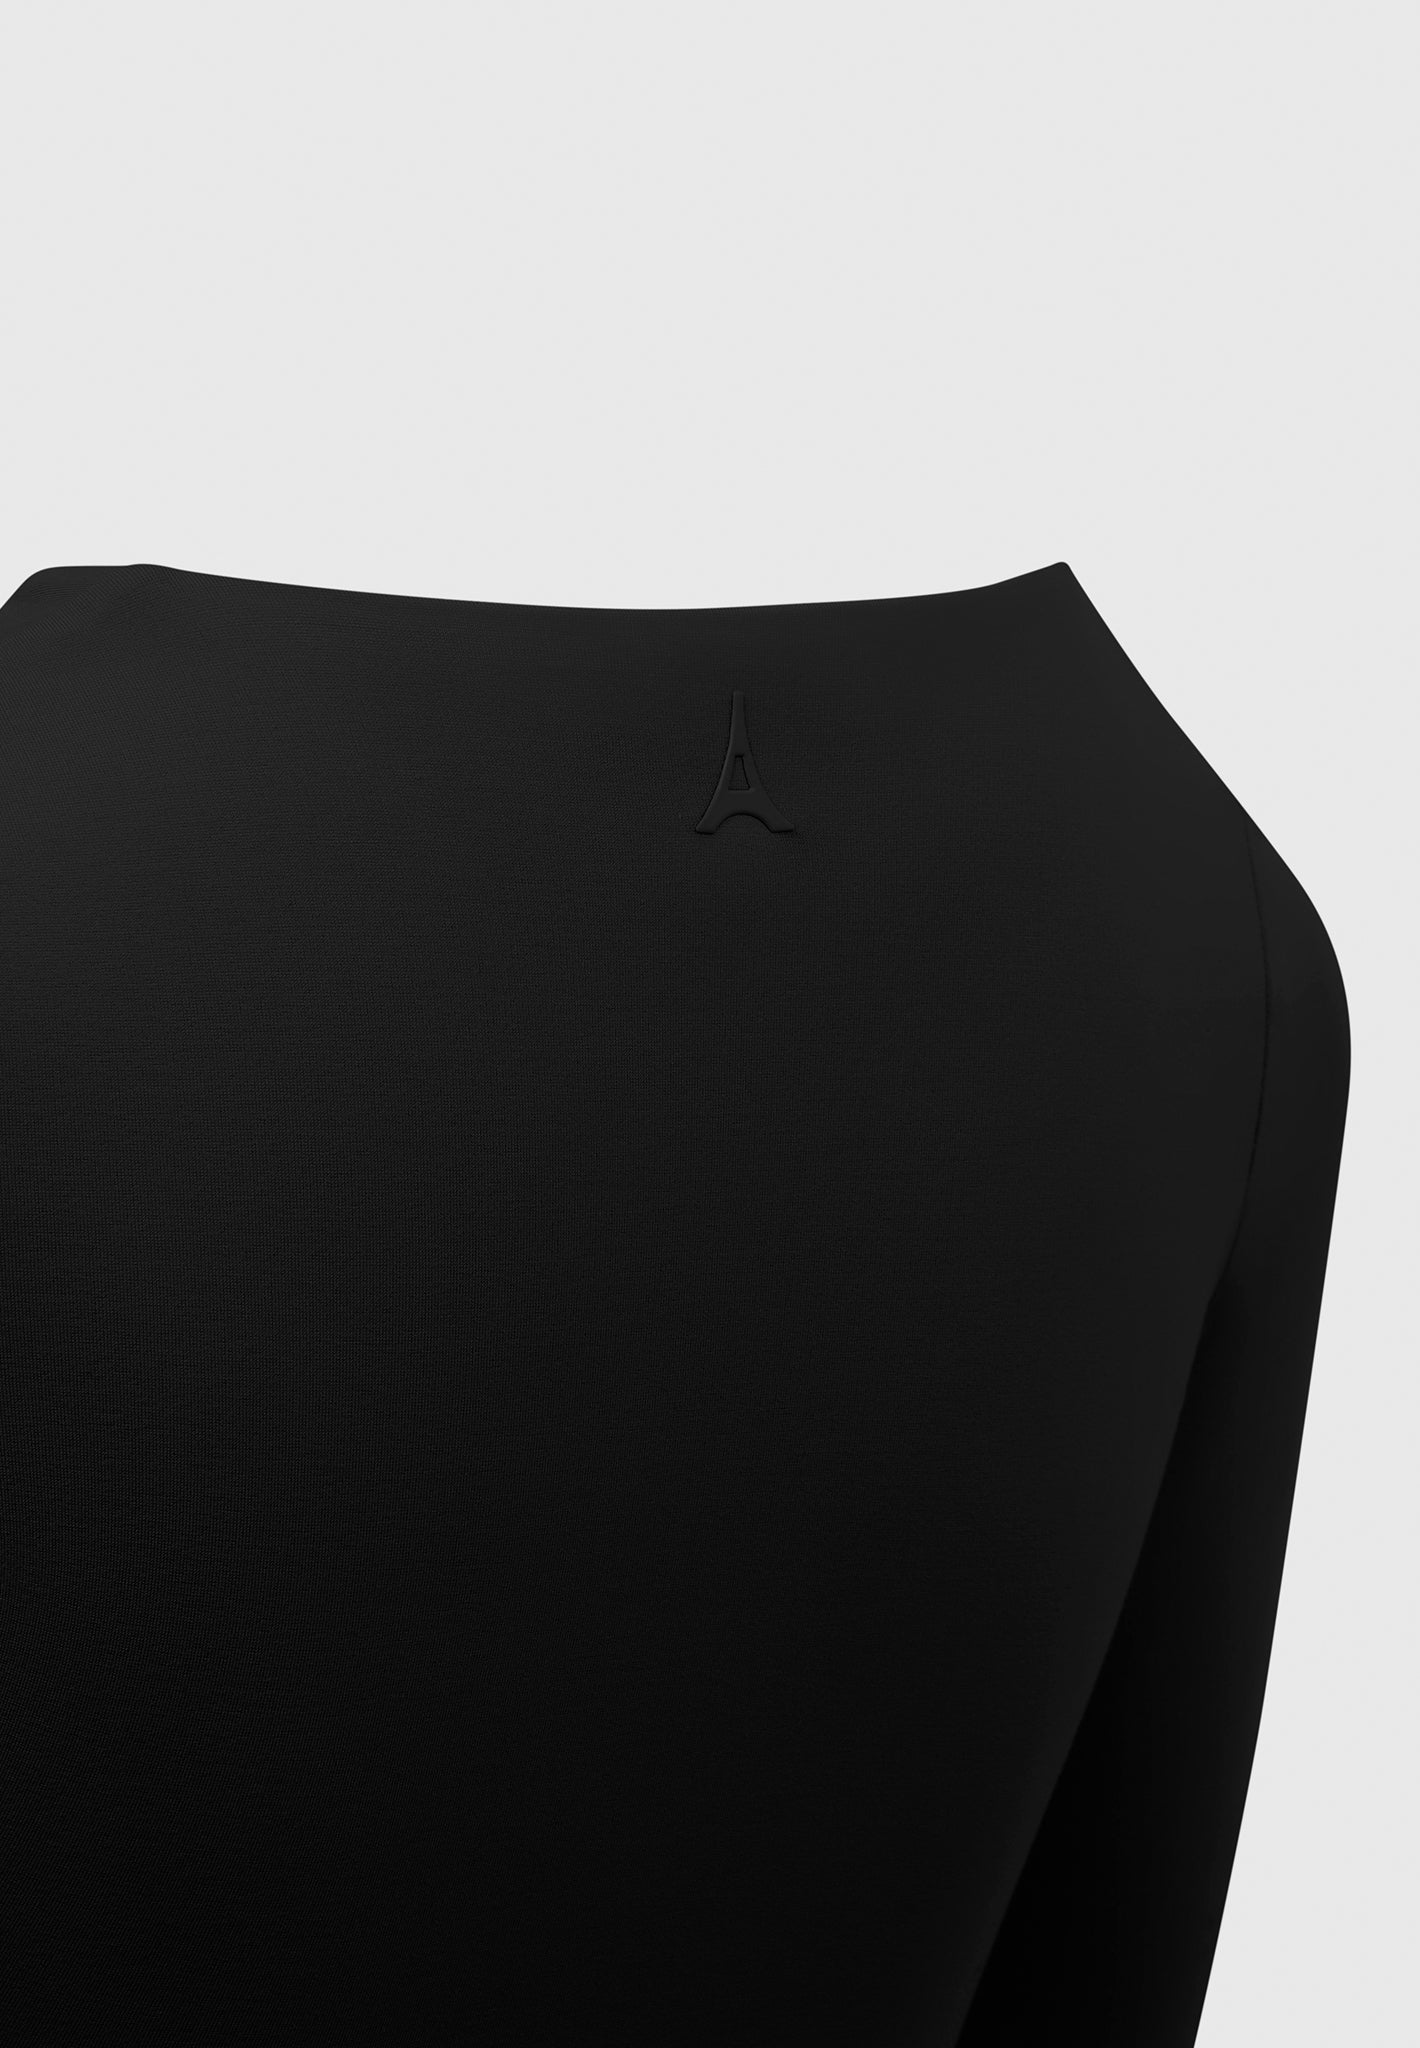 https://ca.manieredevoir.com/cdn/shop/files/Eternelle-Long-Sleeve-Bodysuit-Black1.jpg?v=1700222394